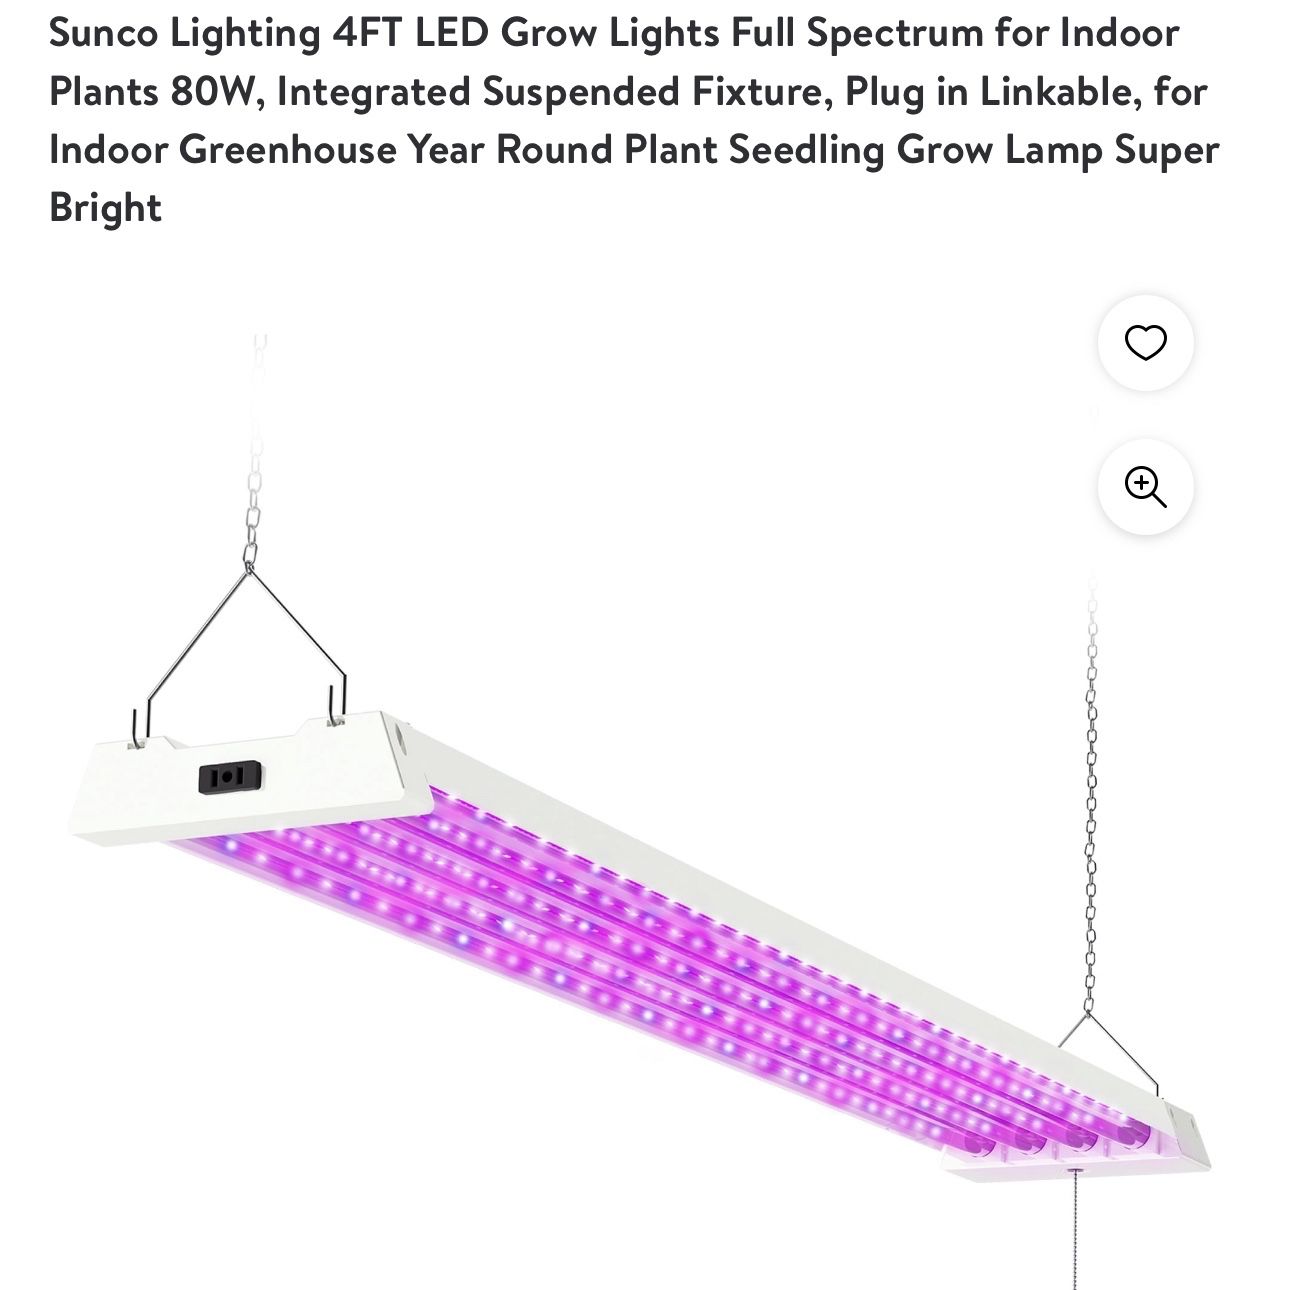 Sunco Lighting 4FT LED Grow Lights Full Spectrum for Indoor Plants 80W